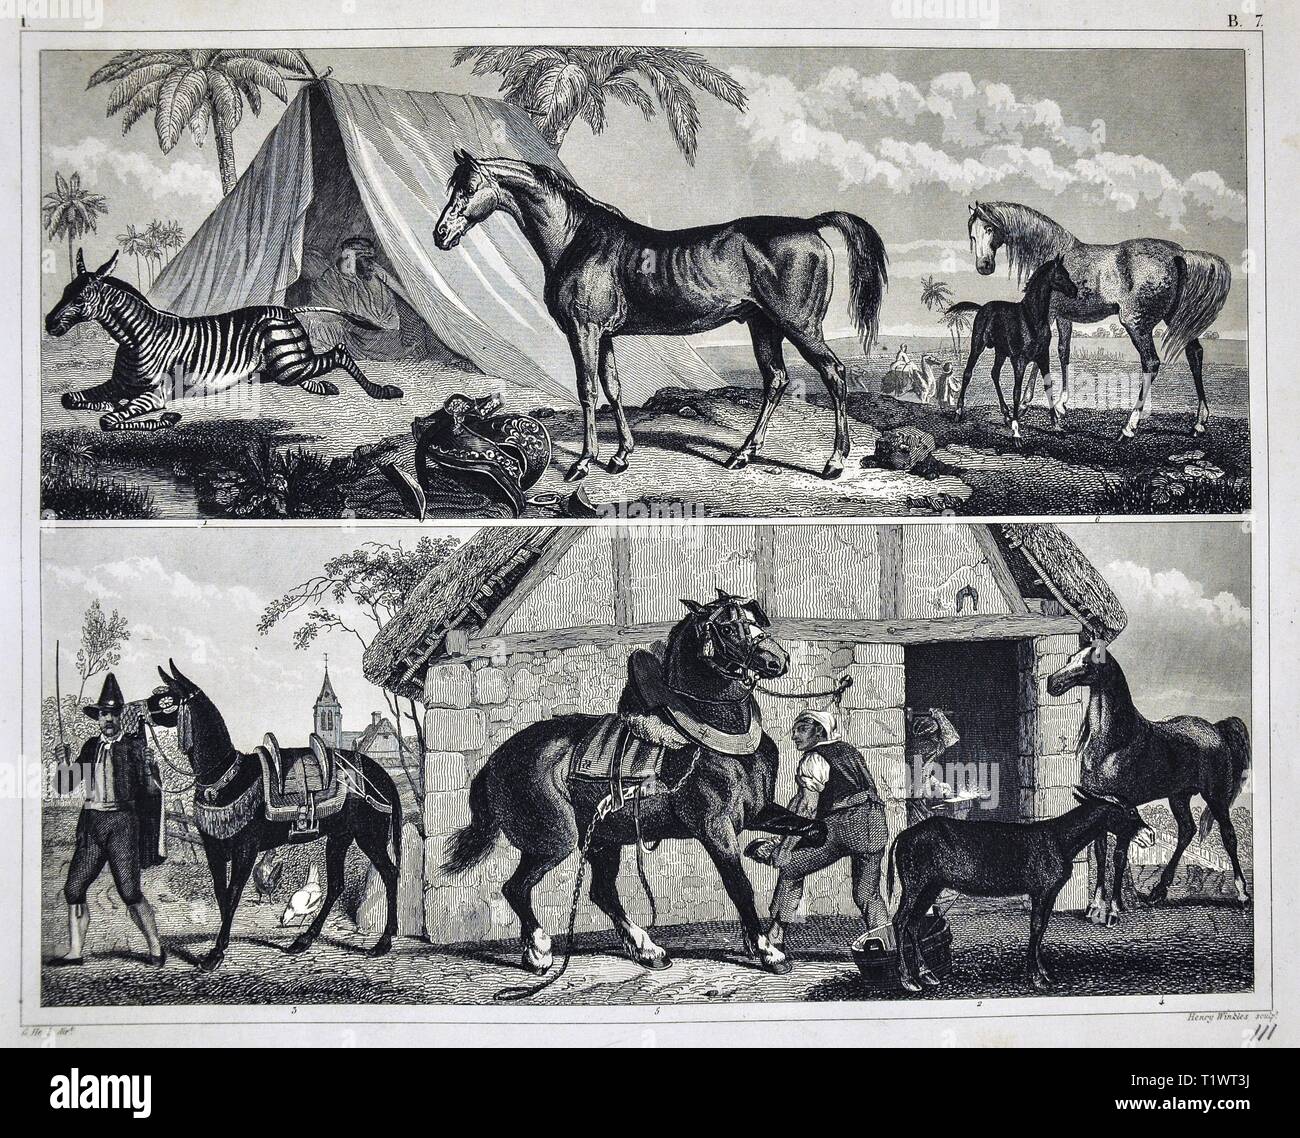 1849 - Impression zoologique La faune Les animaux - Mammifères zèbres, lamas et chevaux domestiqués Banque D'Images